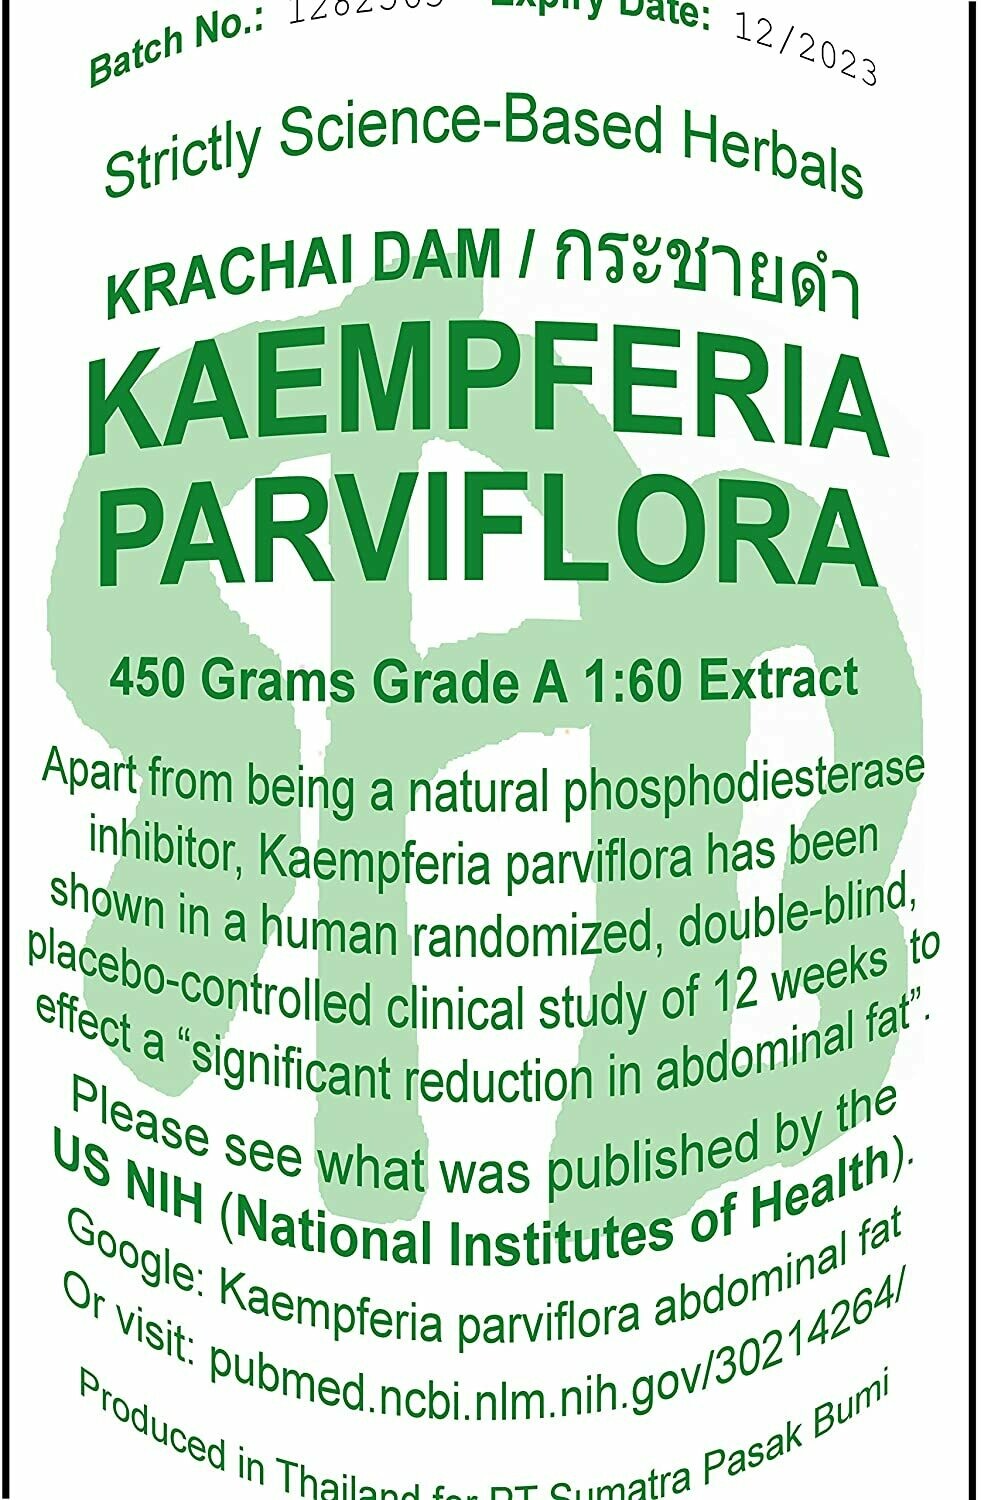 תמצית קמפפריה טהורה 450 גרם בריכוז 1:60 | Kaempeferia parviflora extract 1:60 450g